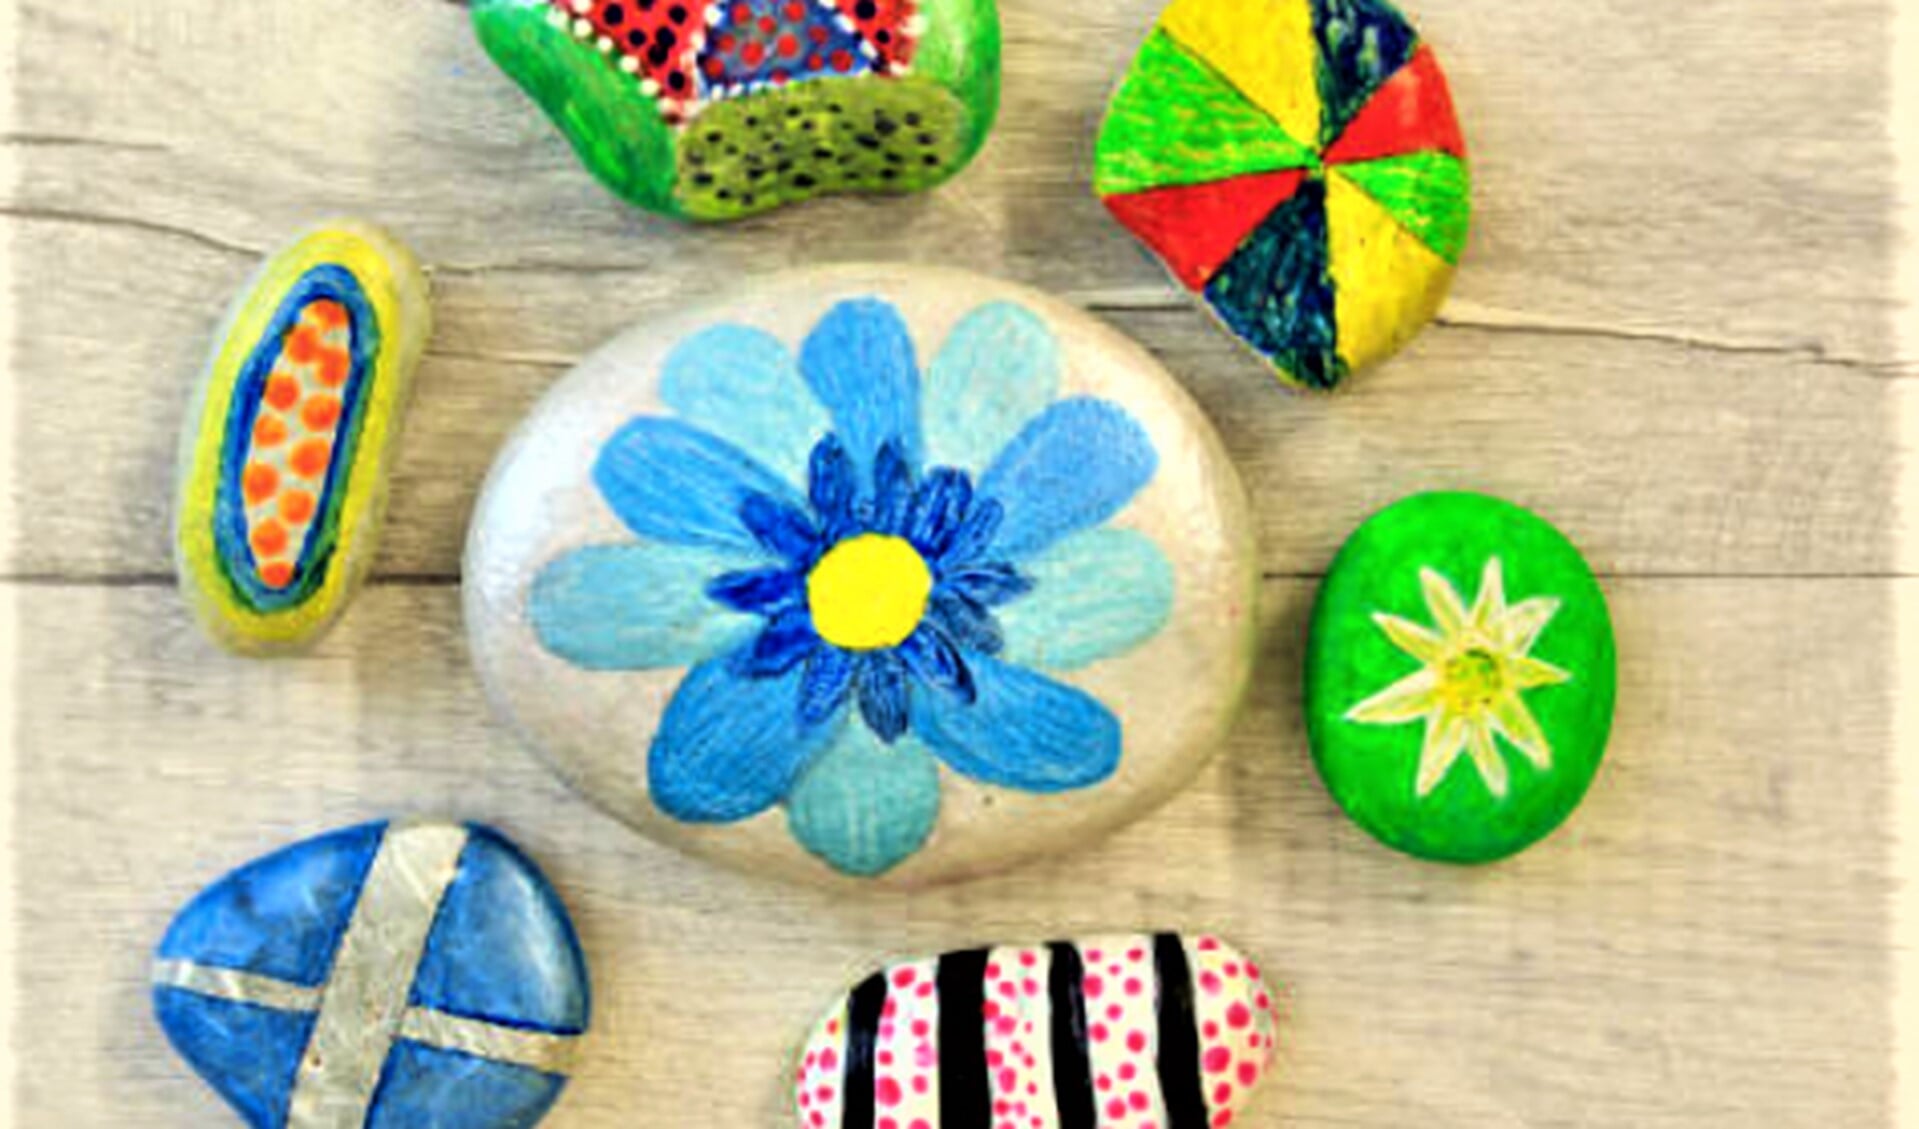 Happy Stones zijn kleurrijk versierde stenen die je kunt verstoppen in de natuur zodat anderen ze vinden.